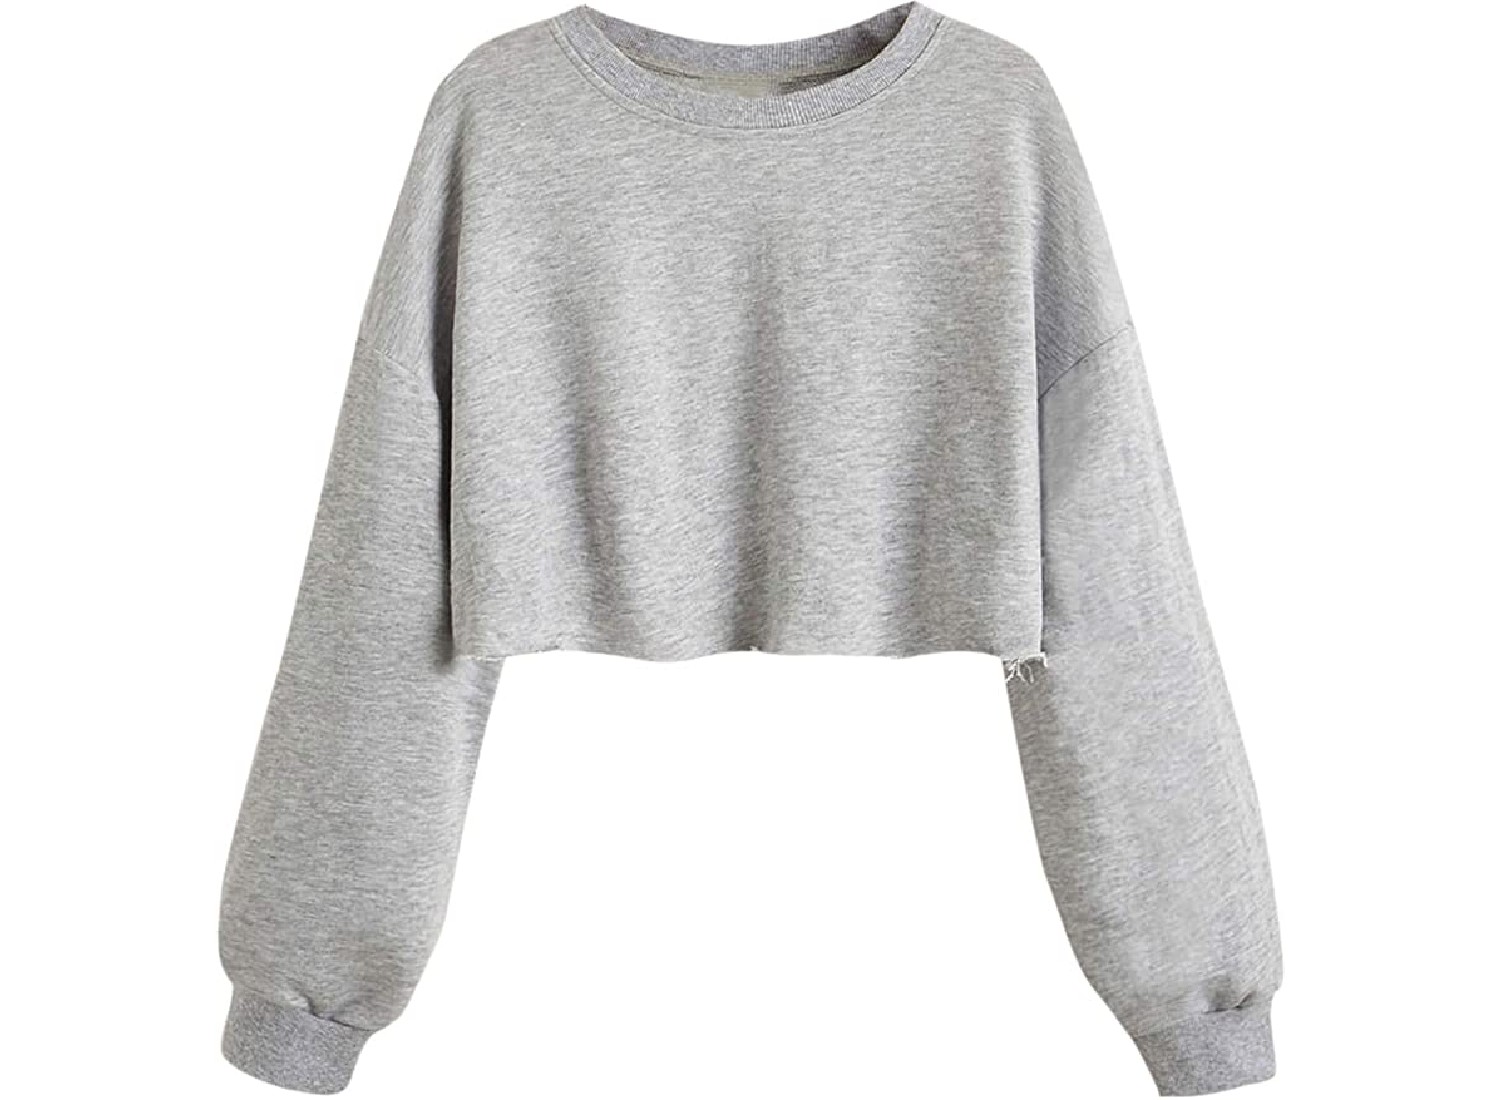 A grey, cropped sweatshirt.